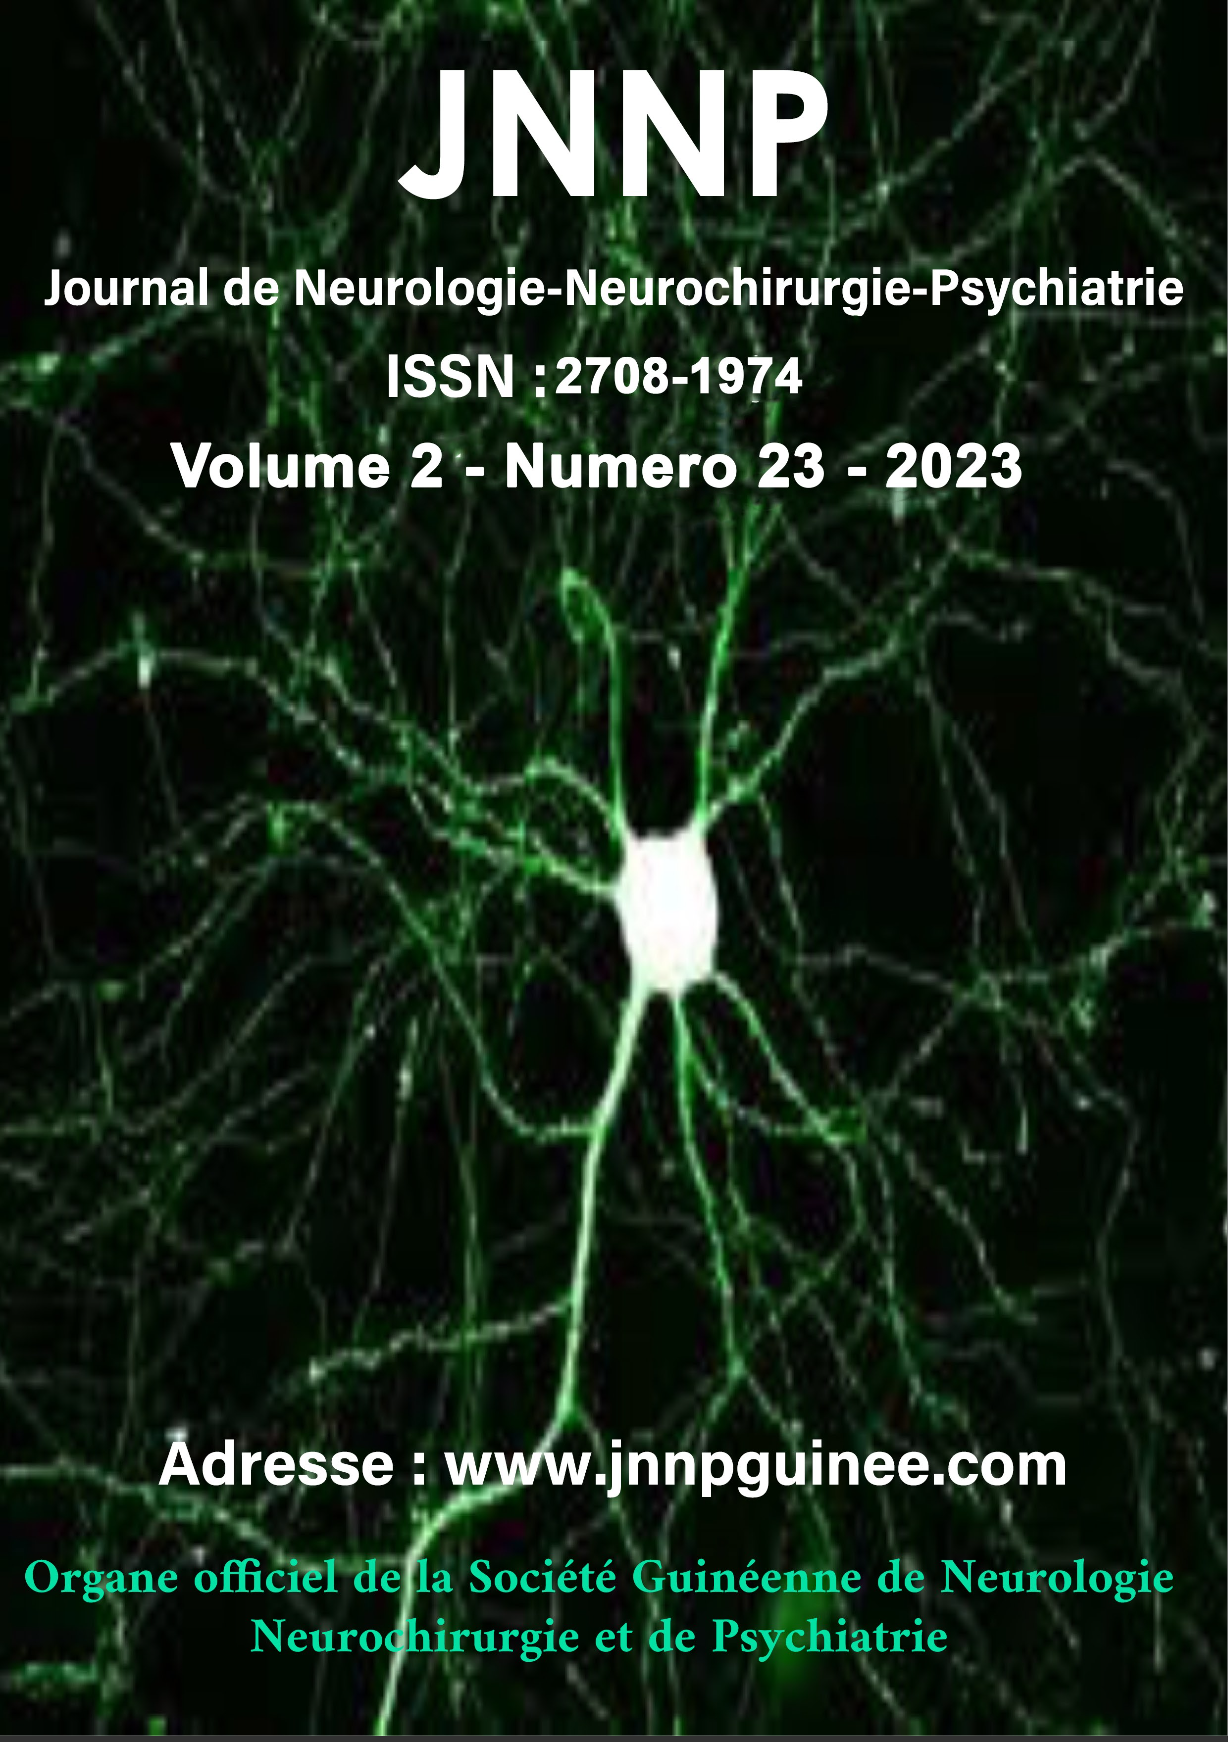 Journal de Neurologie Neurochirurgie et de Psychiatrie de Guinée. Volume 02 Numéro 23 Année 2023